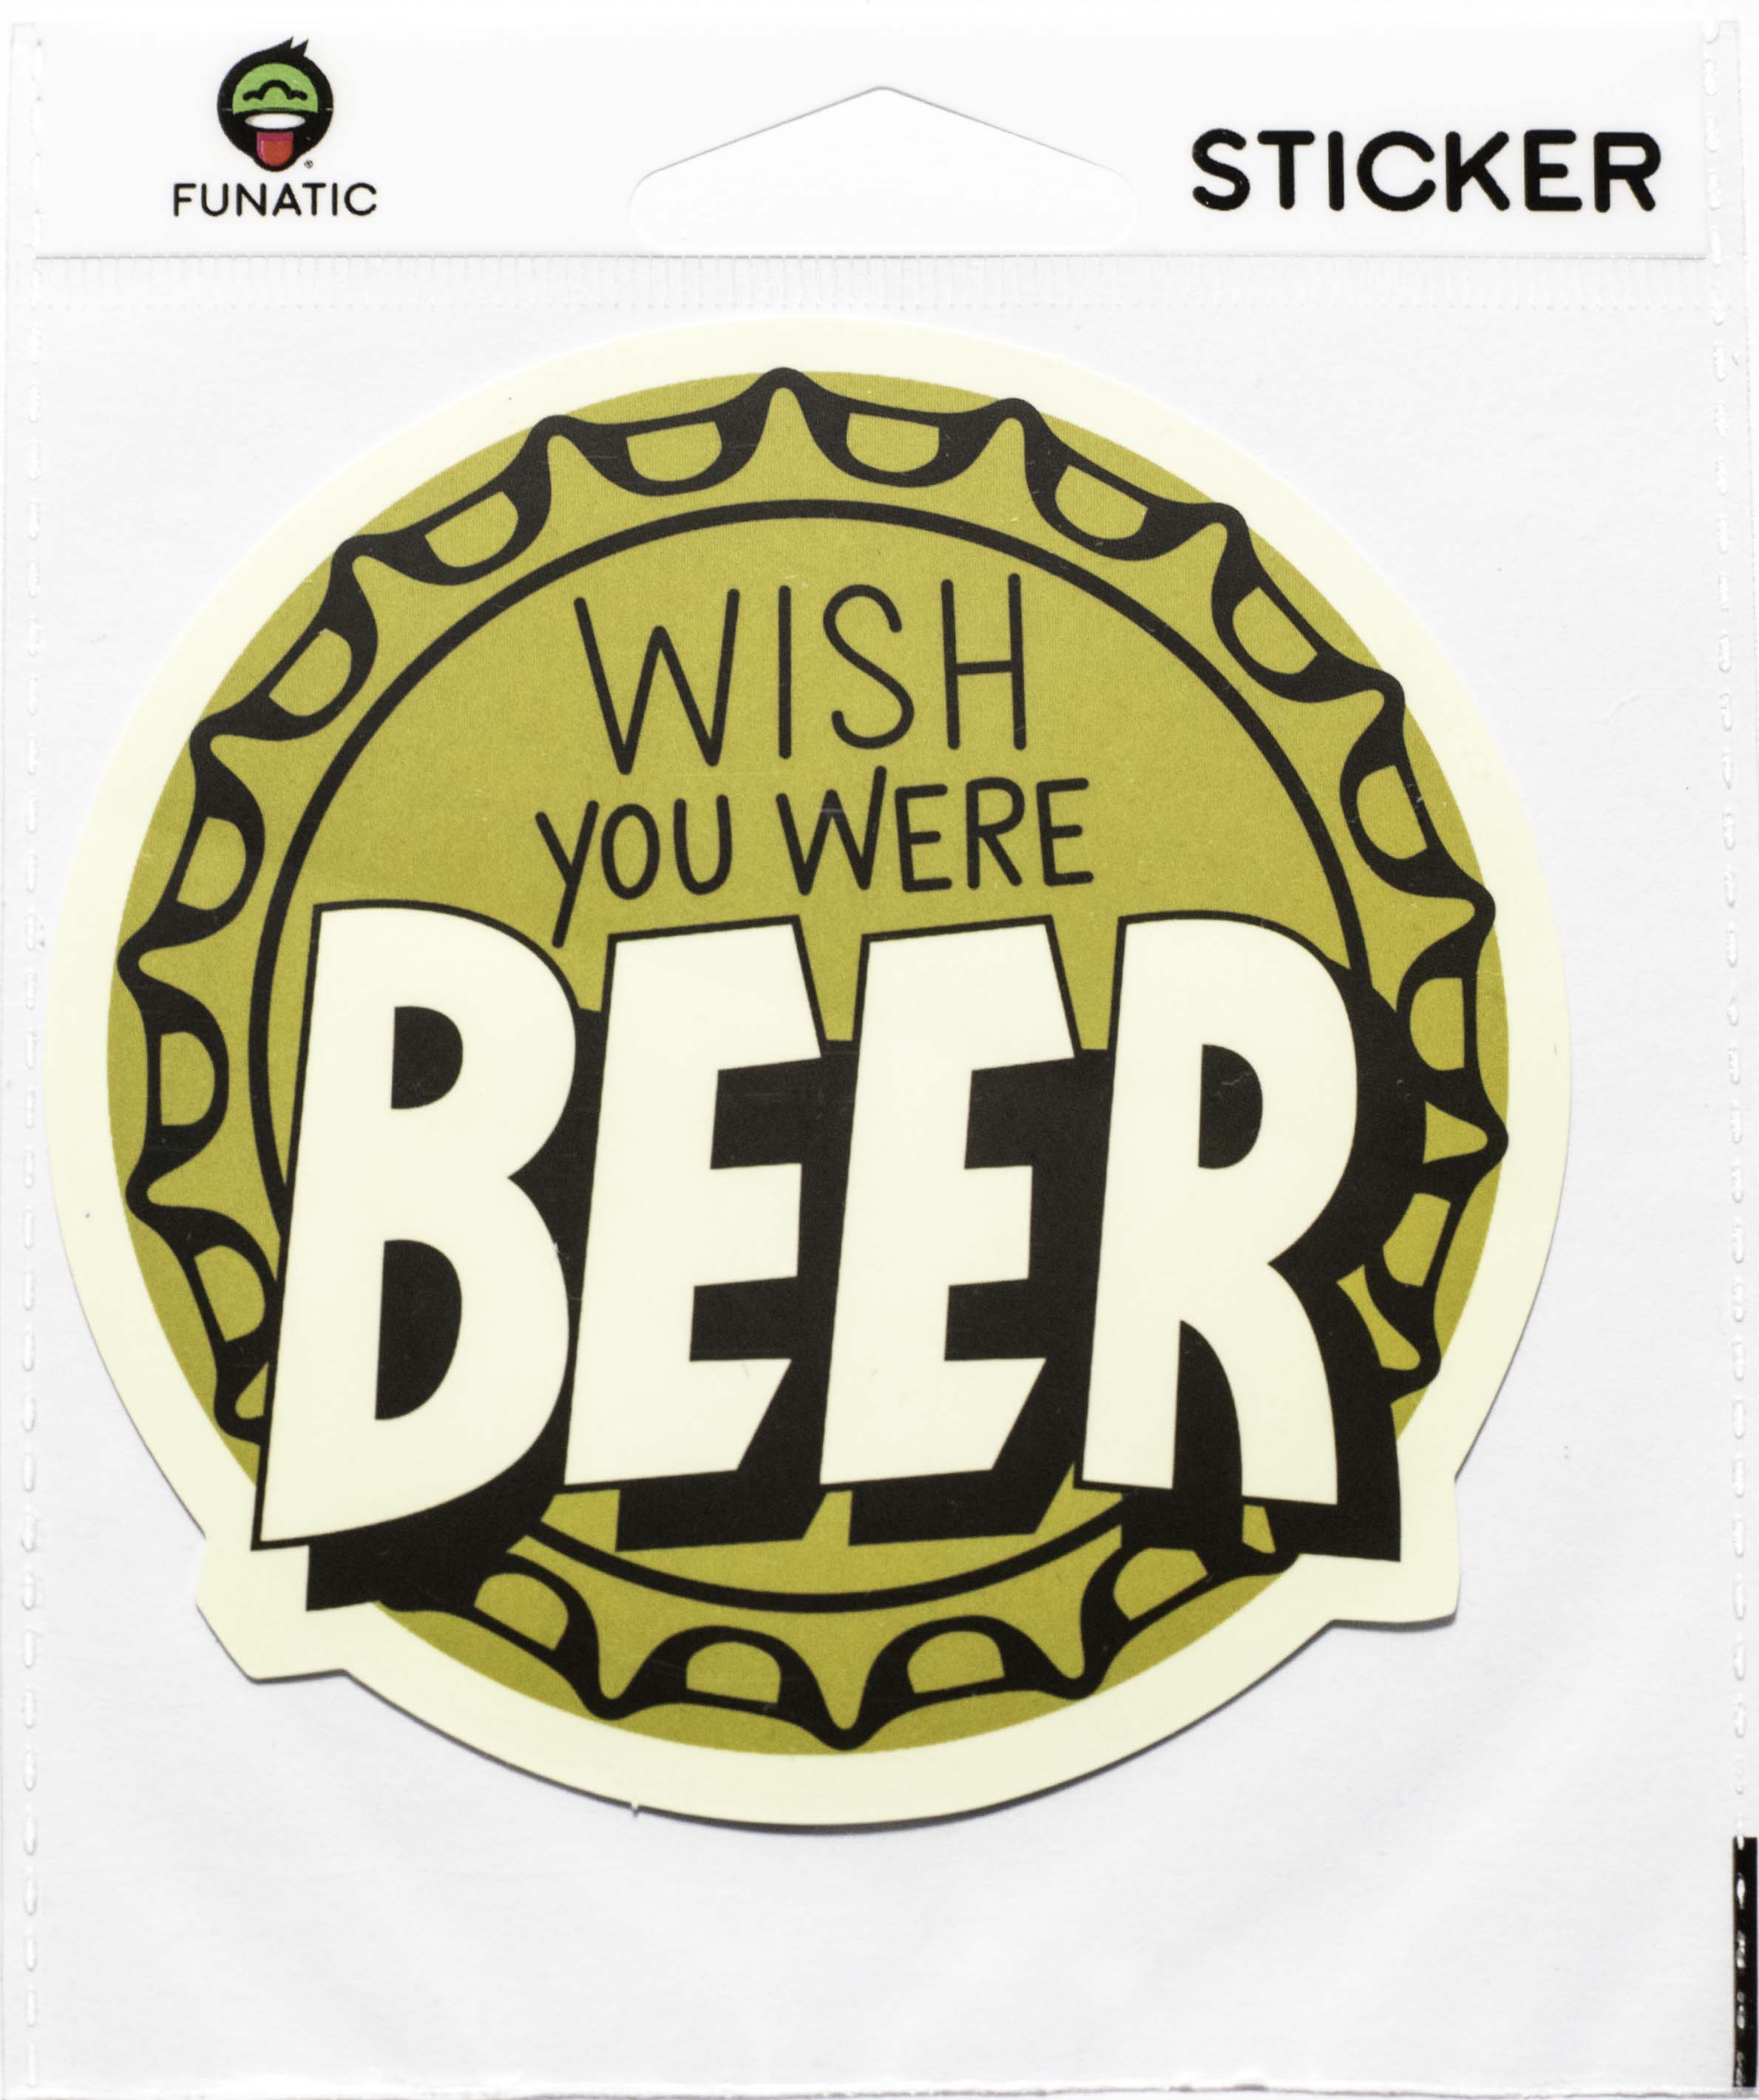 Wish You Were Beer Sticker